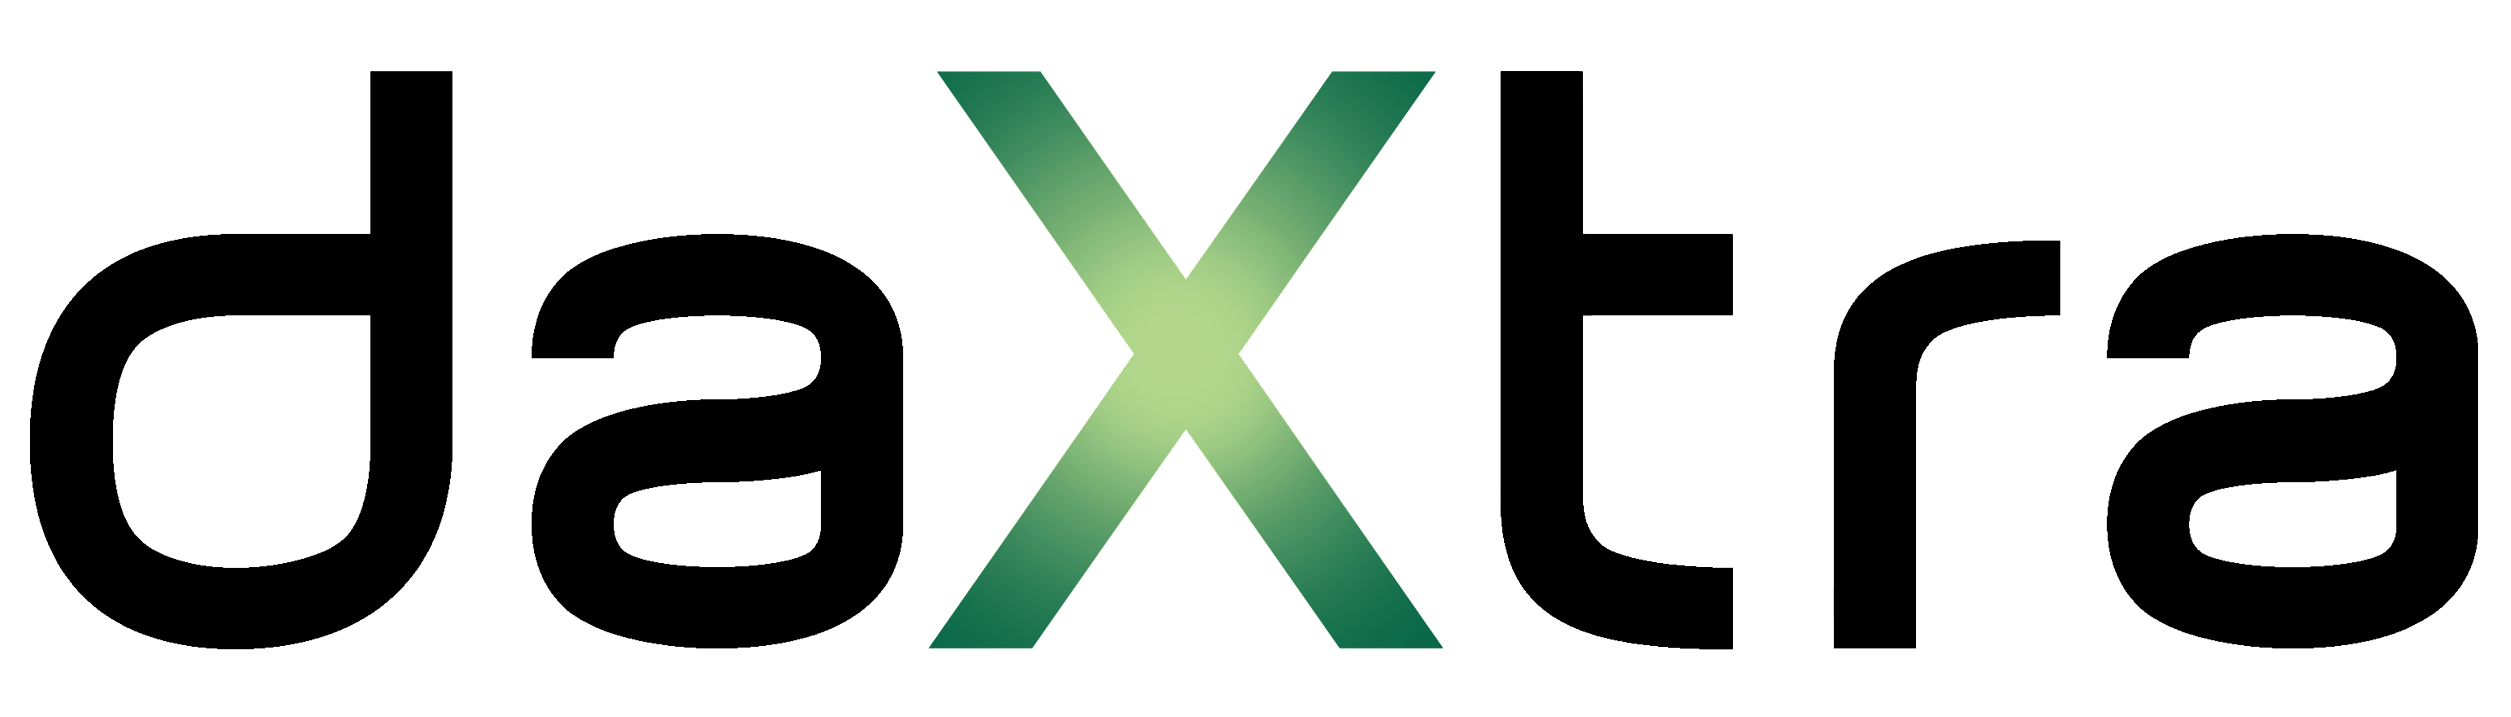 DaXtra Logo GX trans sans